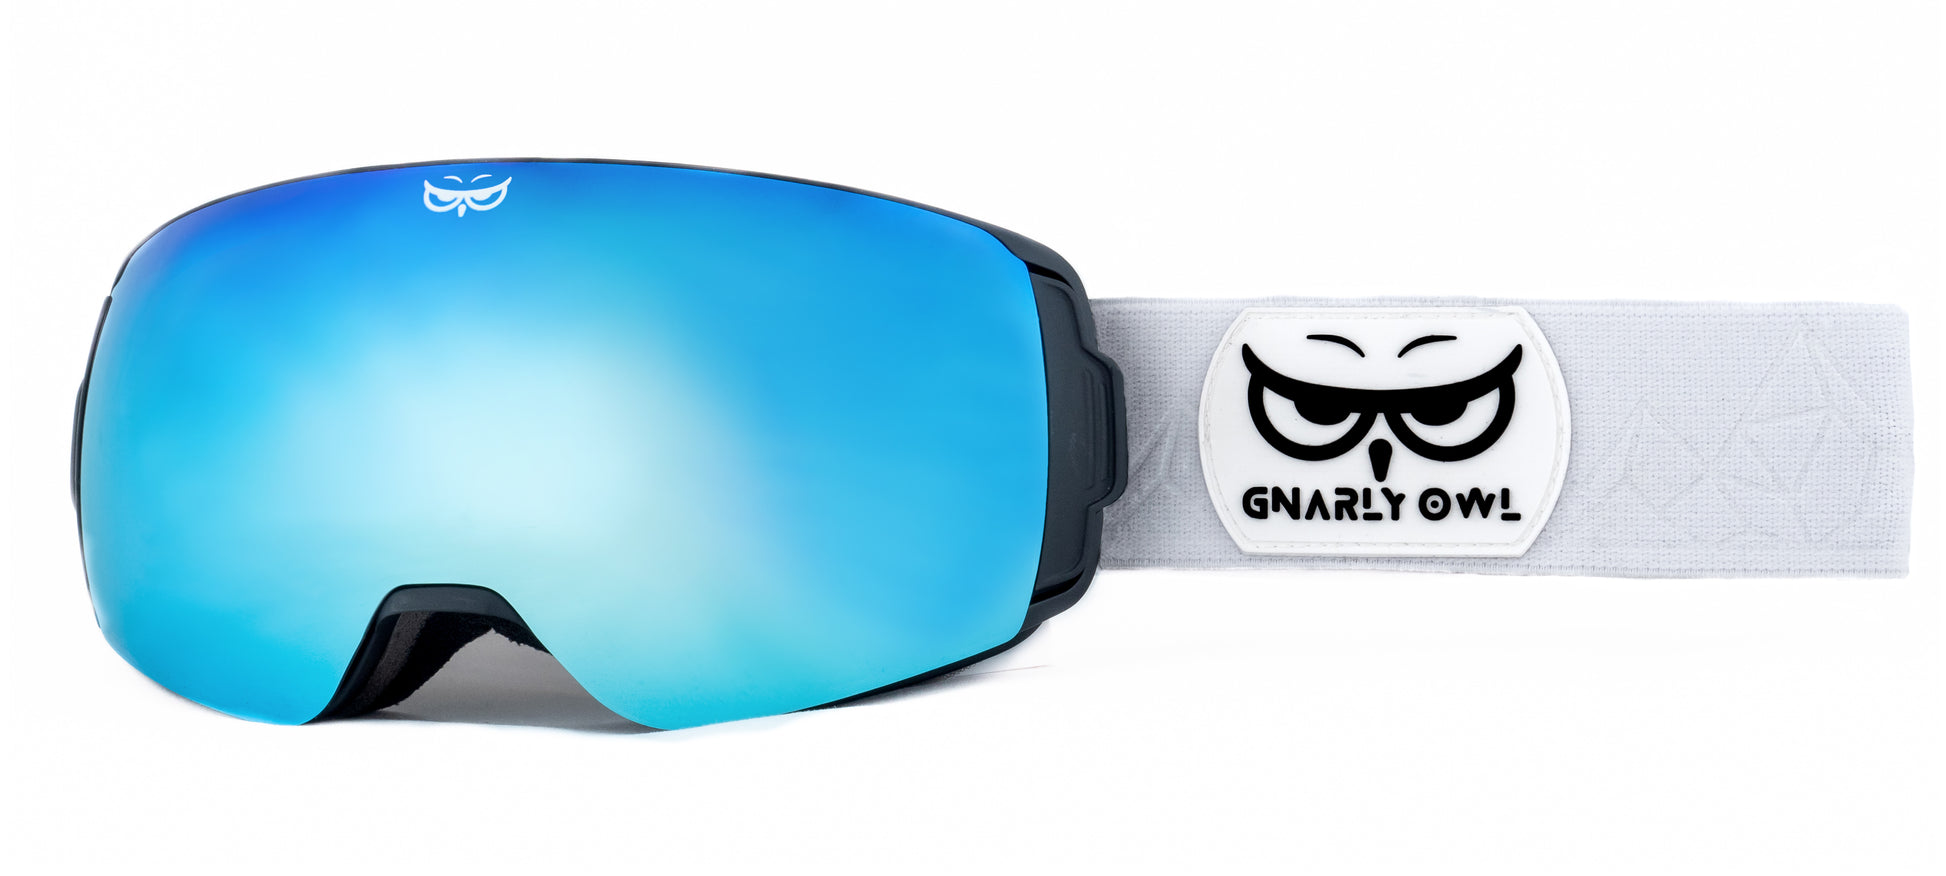 Gnarly Owl polarizační lyžařské snowboardové skialpové splitboardové brýle česká značka ledovcově modrý zrcadlový REVO zorník bílý pásek dámské pánské brýle malý obličej magnetické zorníky